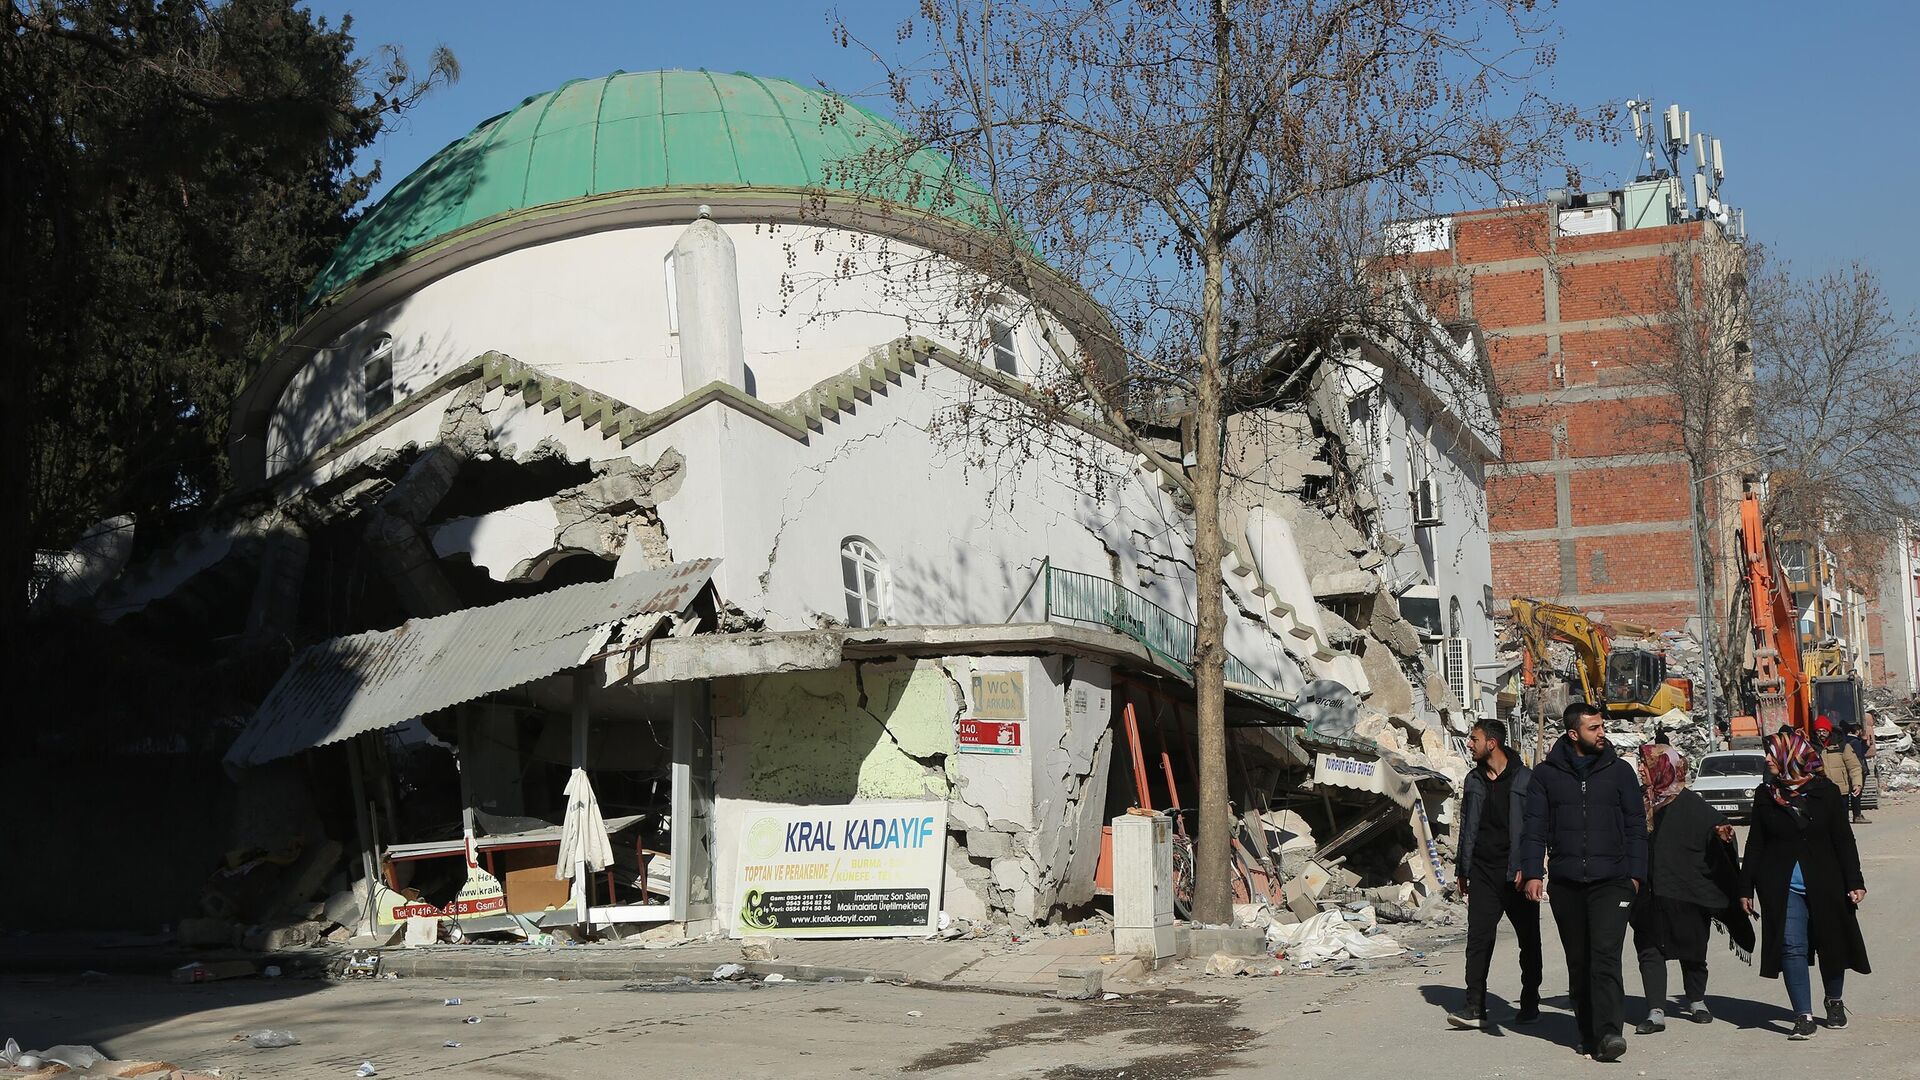 Жители на улице пострадавшего от землетрясения турецкого города Адыямана - РИА Новости, 1920, 21.02.2023